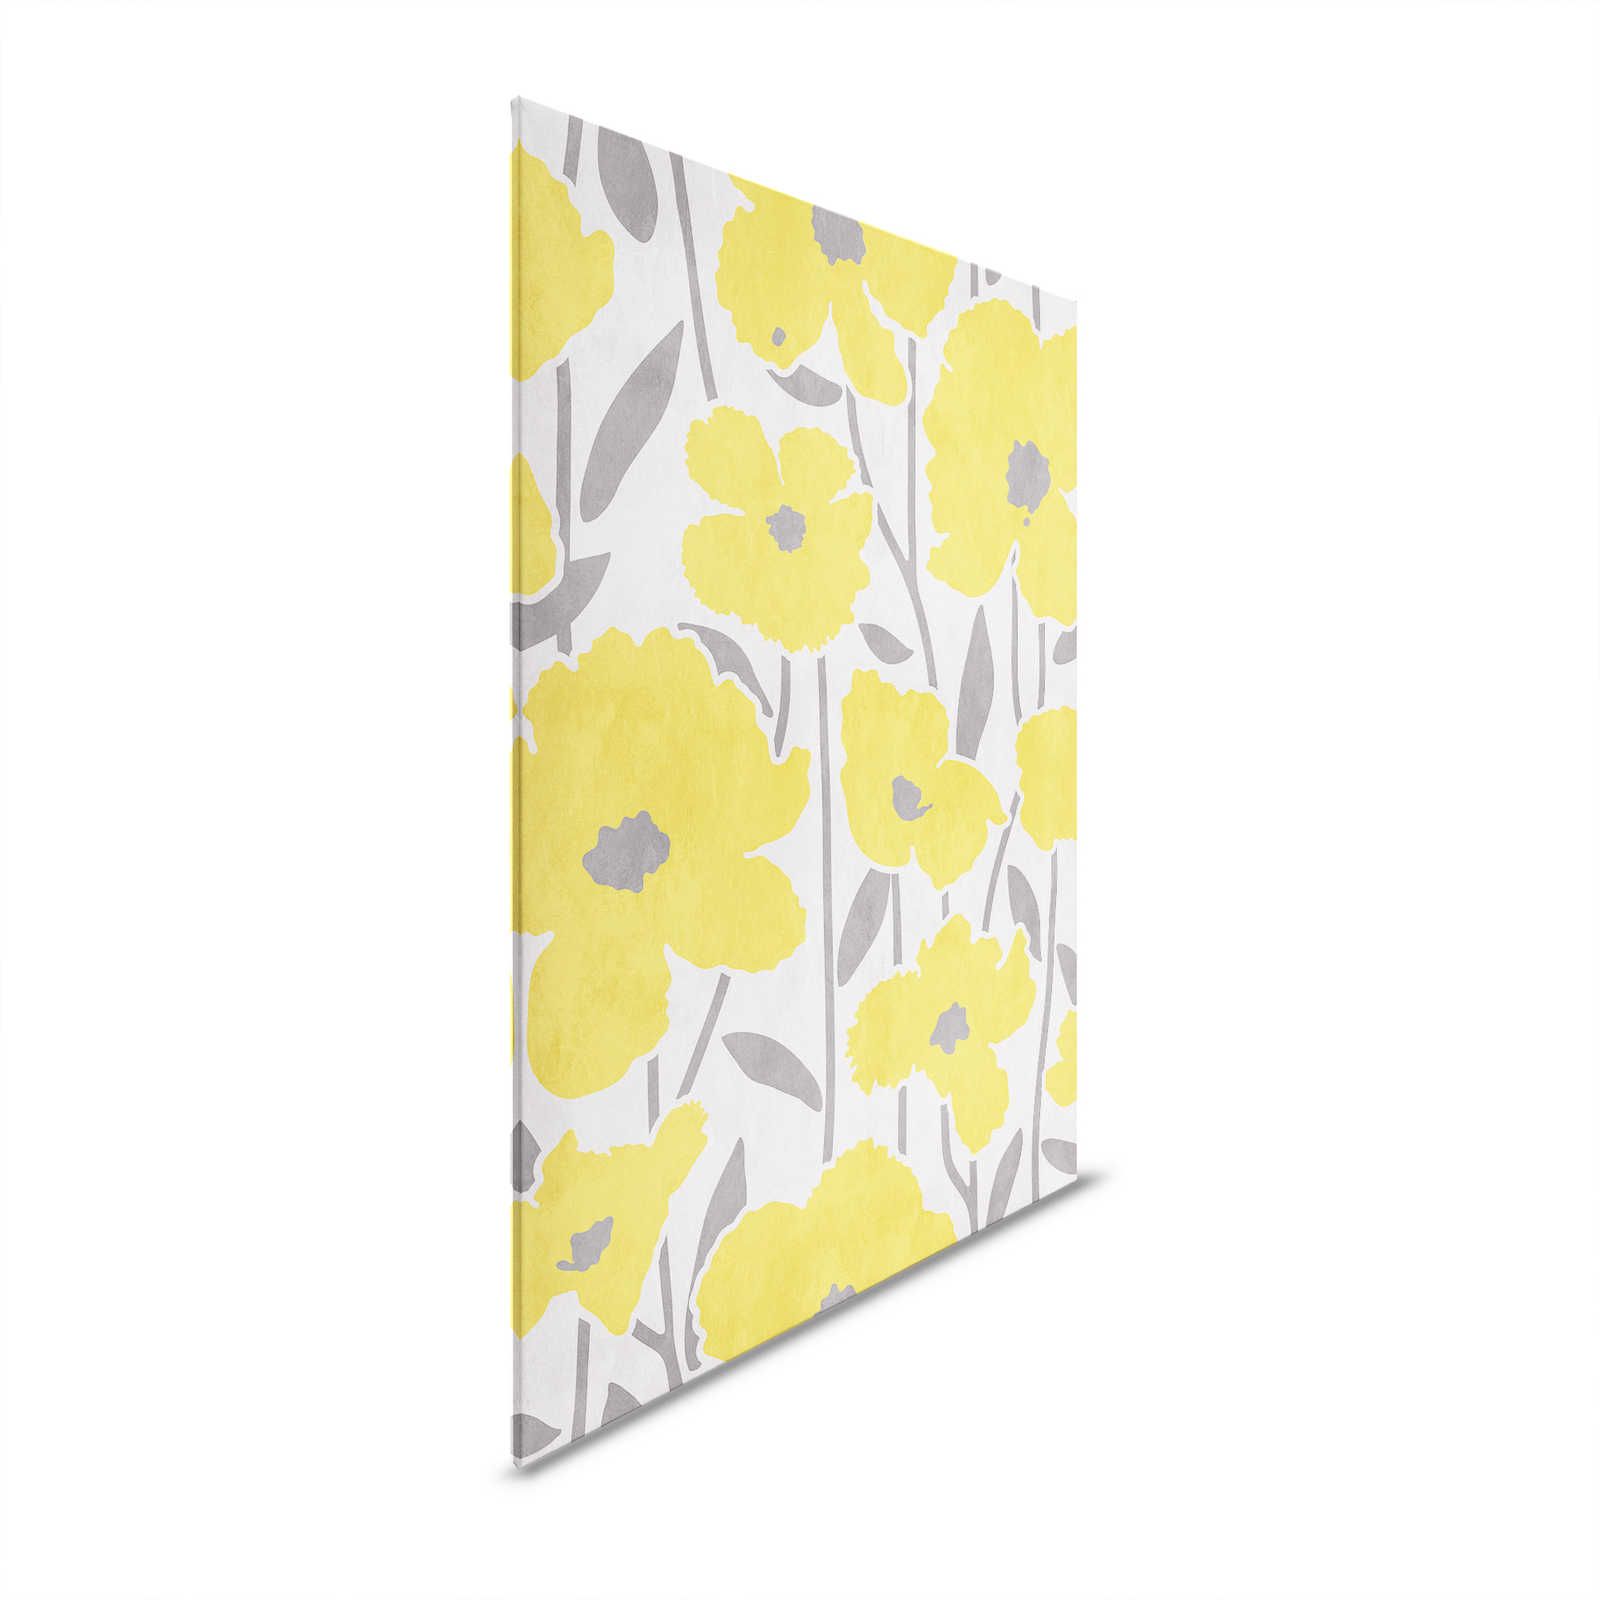 Flower Market 4 - Blumen Leinwandbild Gelb & Grau mit Putzoptik Effekt – 0,60 m x 0,80 m
